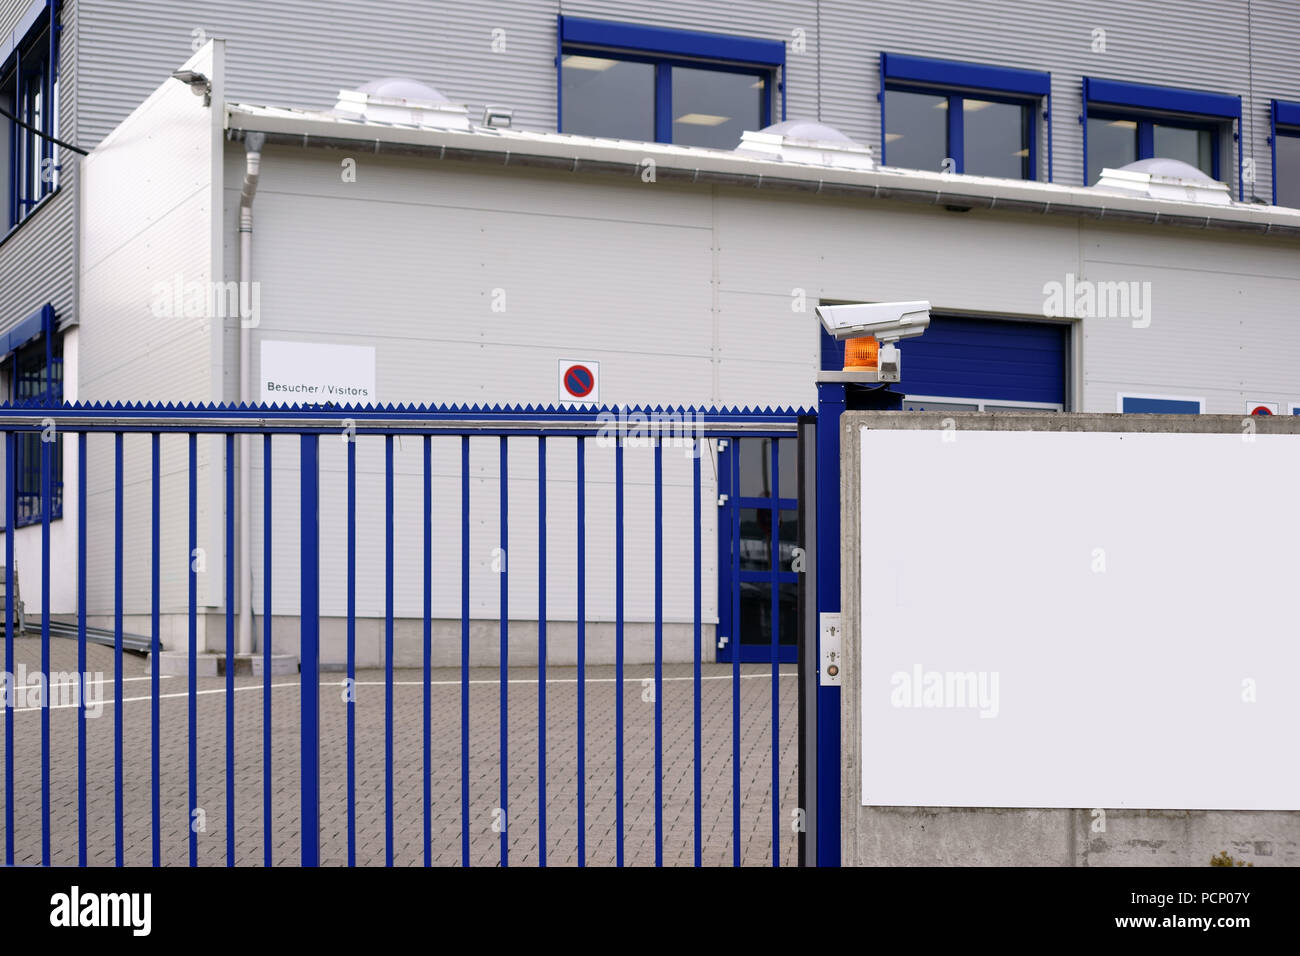 La cámara-puerta de entrada supervisada de una fábrica de entrada a una fábrica y el polígono industrial. Foto de stock